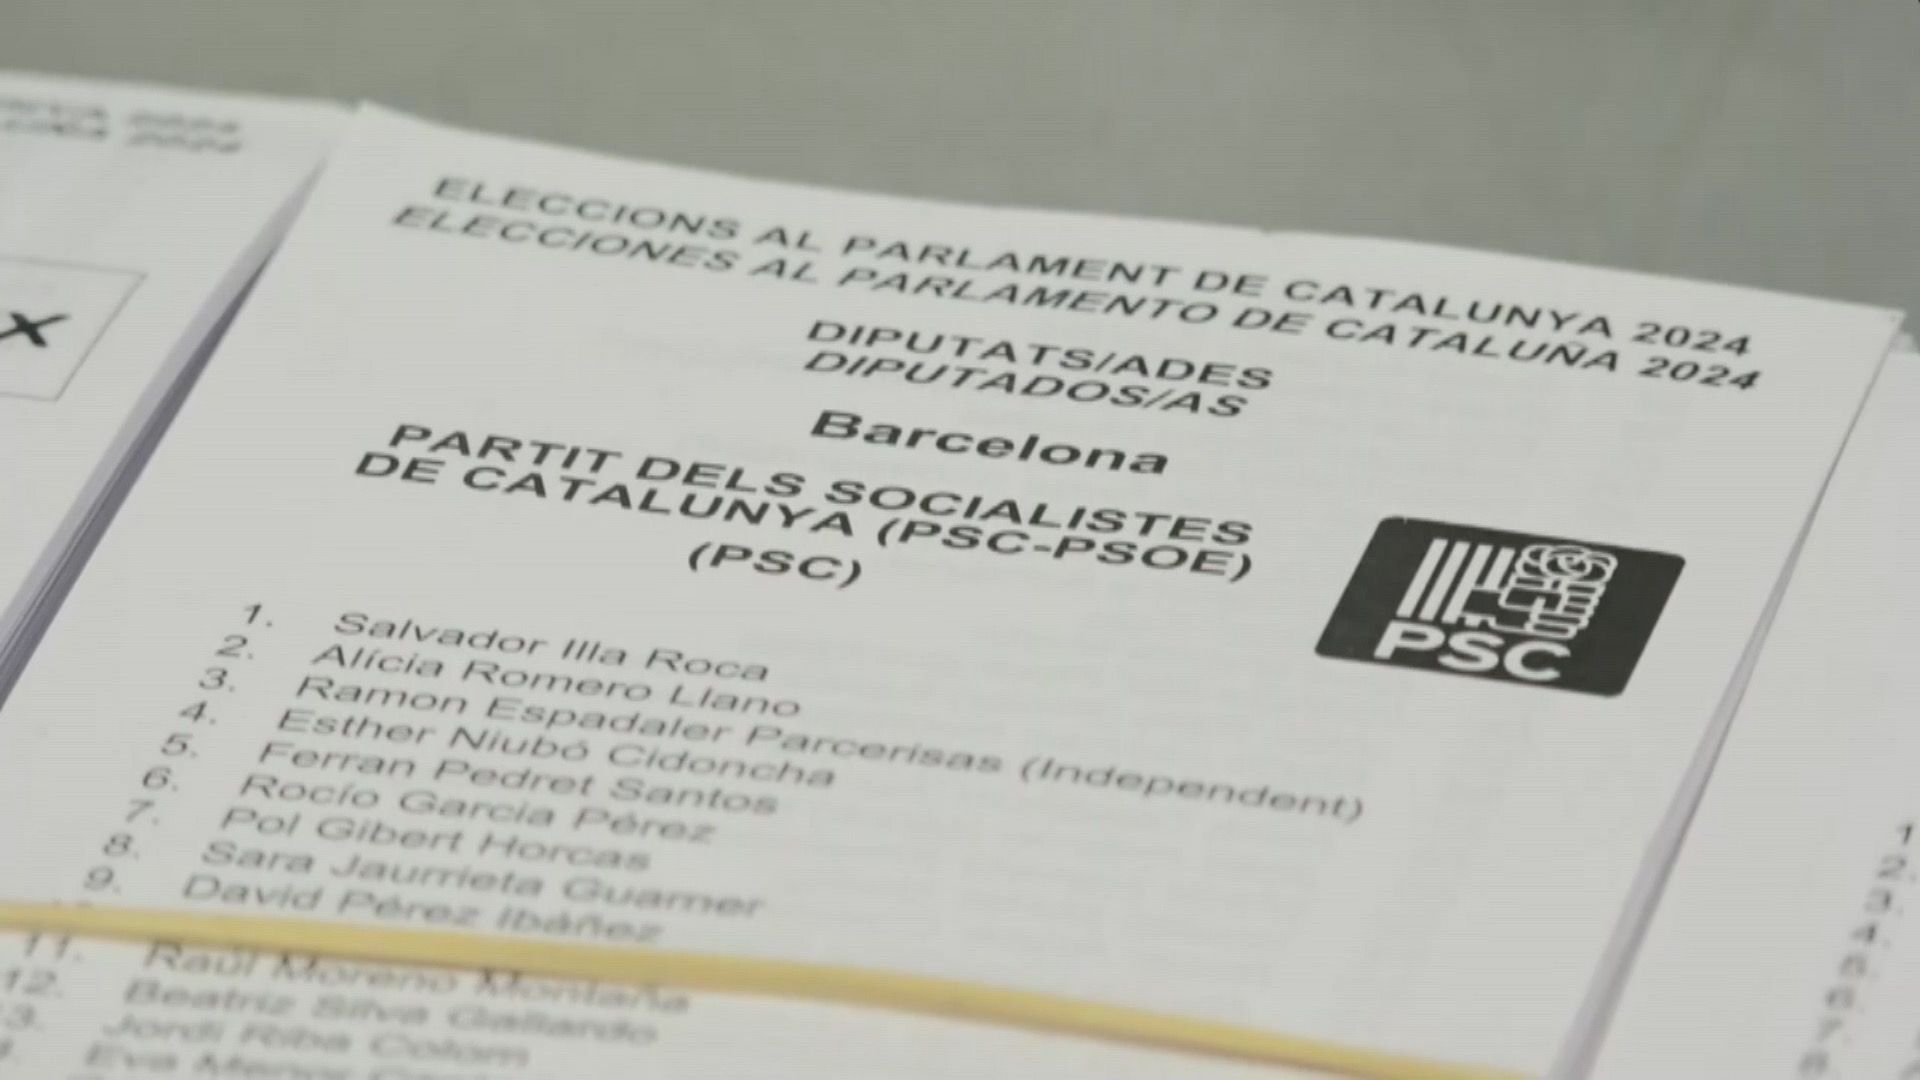 Kataluniako hauteskundeak 